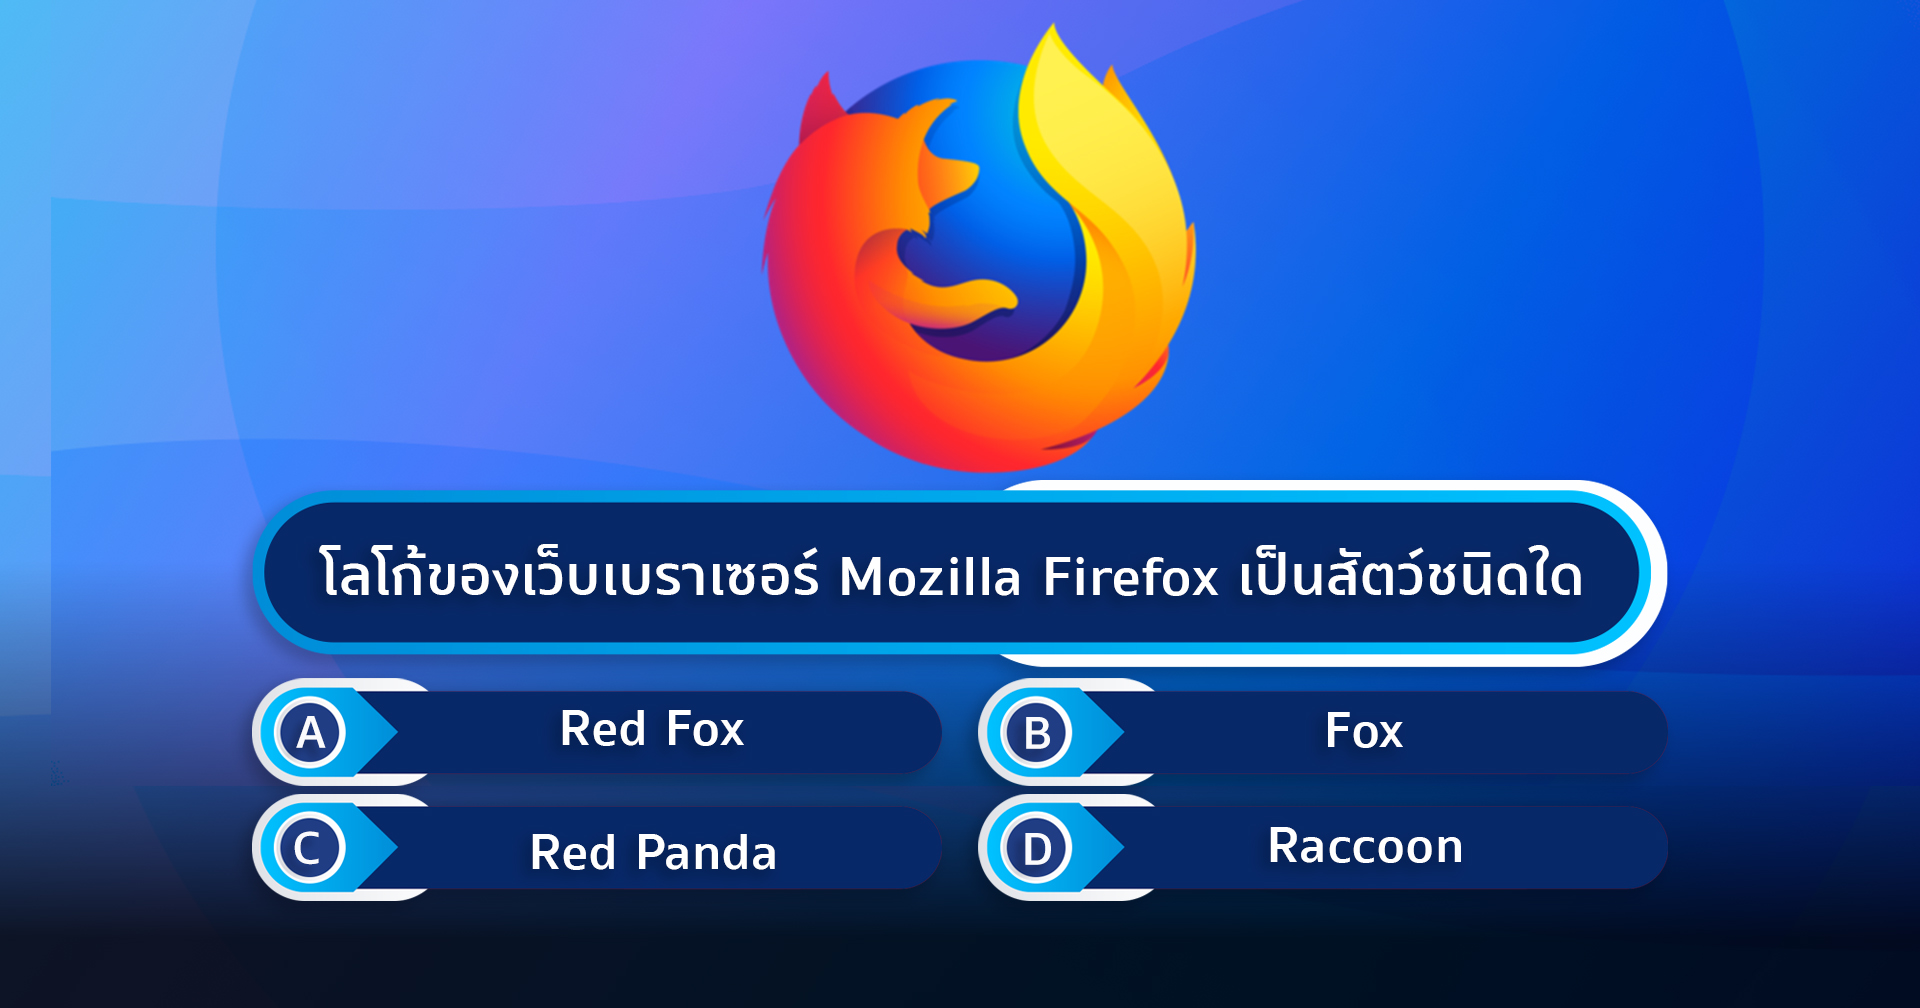 โลโก้ของเว็บเบราว์เซอร์ Mozilla Firefox เป็นสัตว์ชนิดใด?